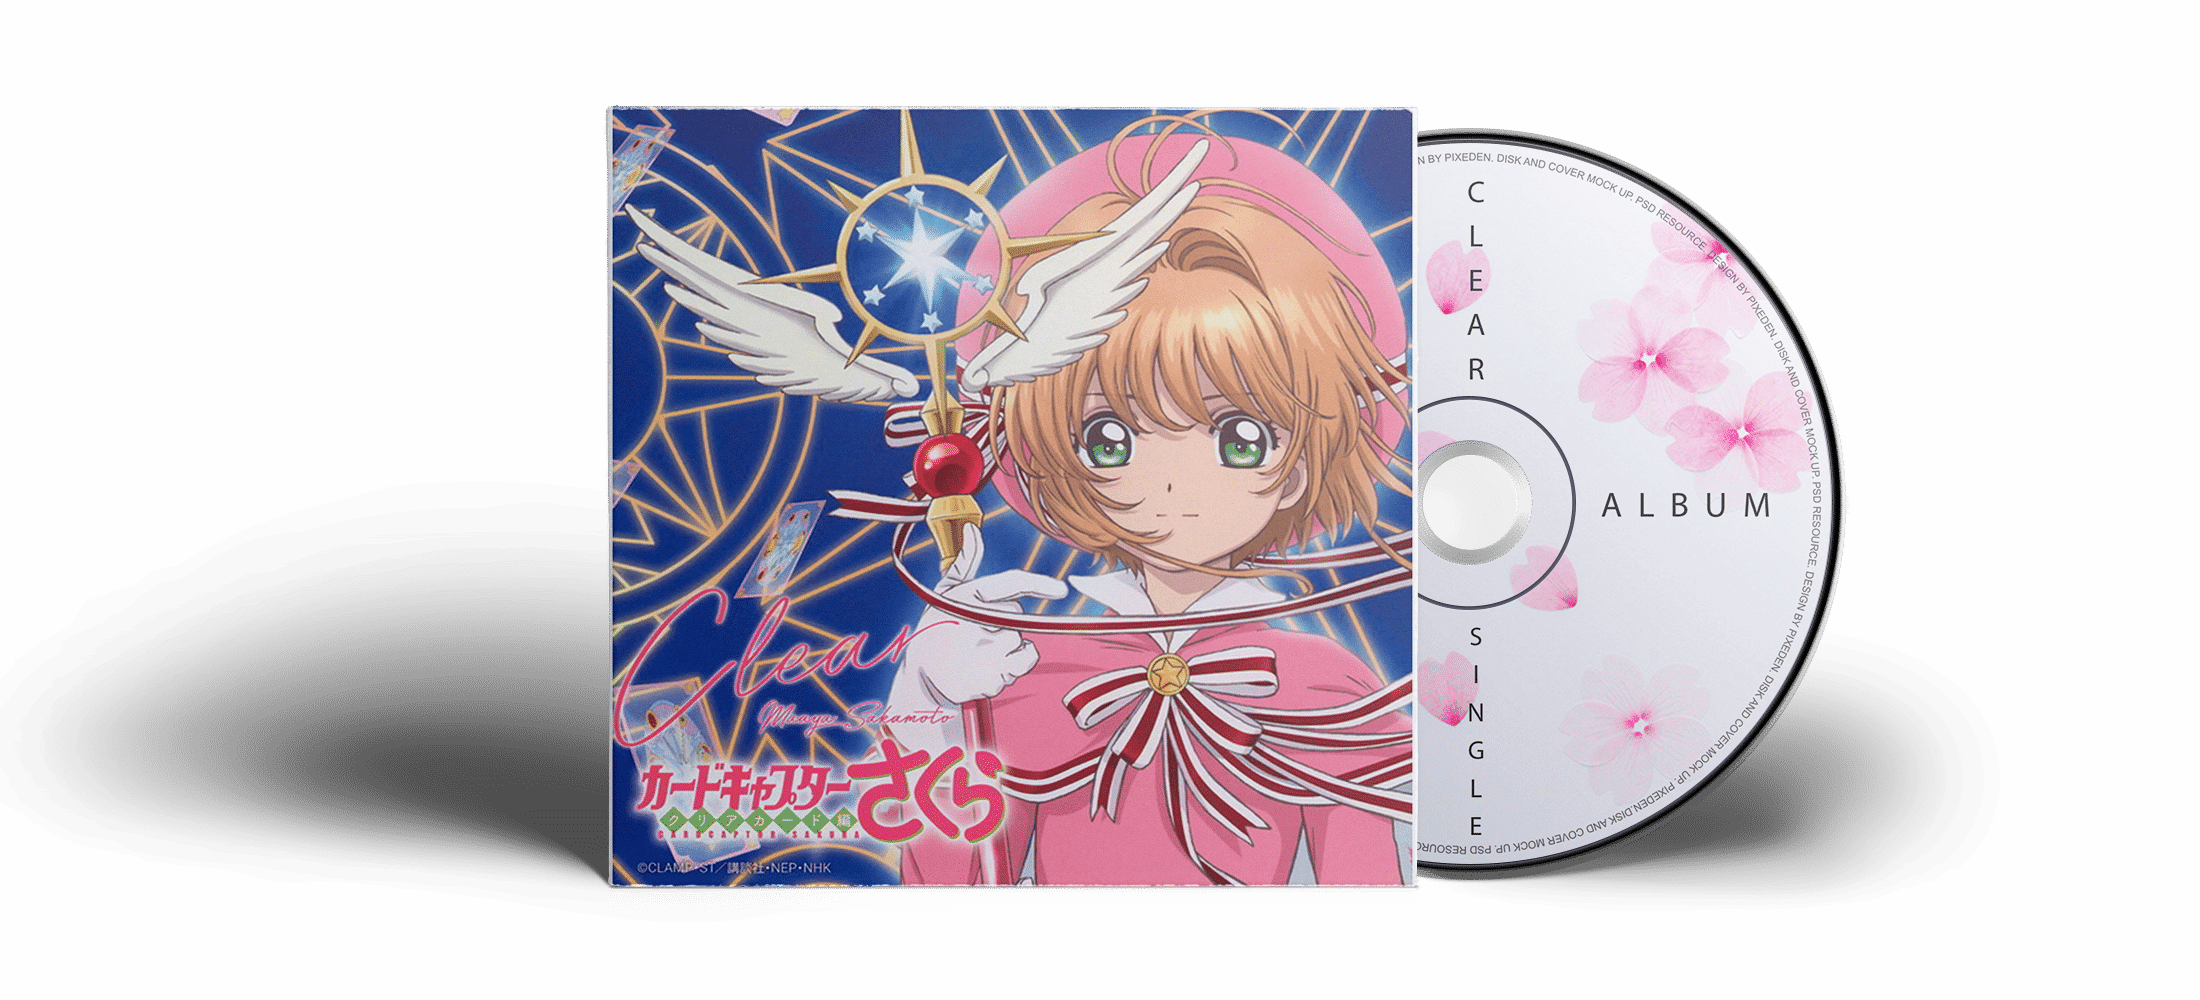 Download Soundtrack ⋆ Cardcaptor Sakura Fans